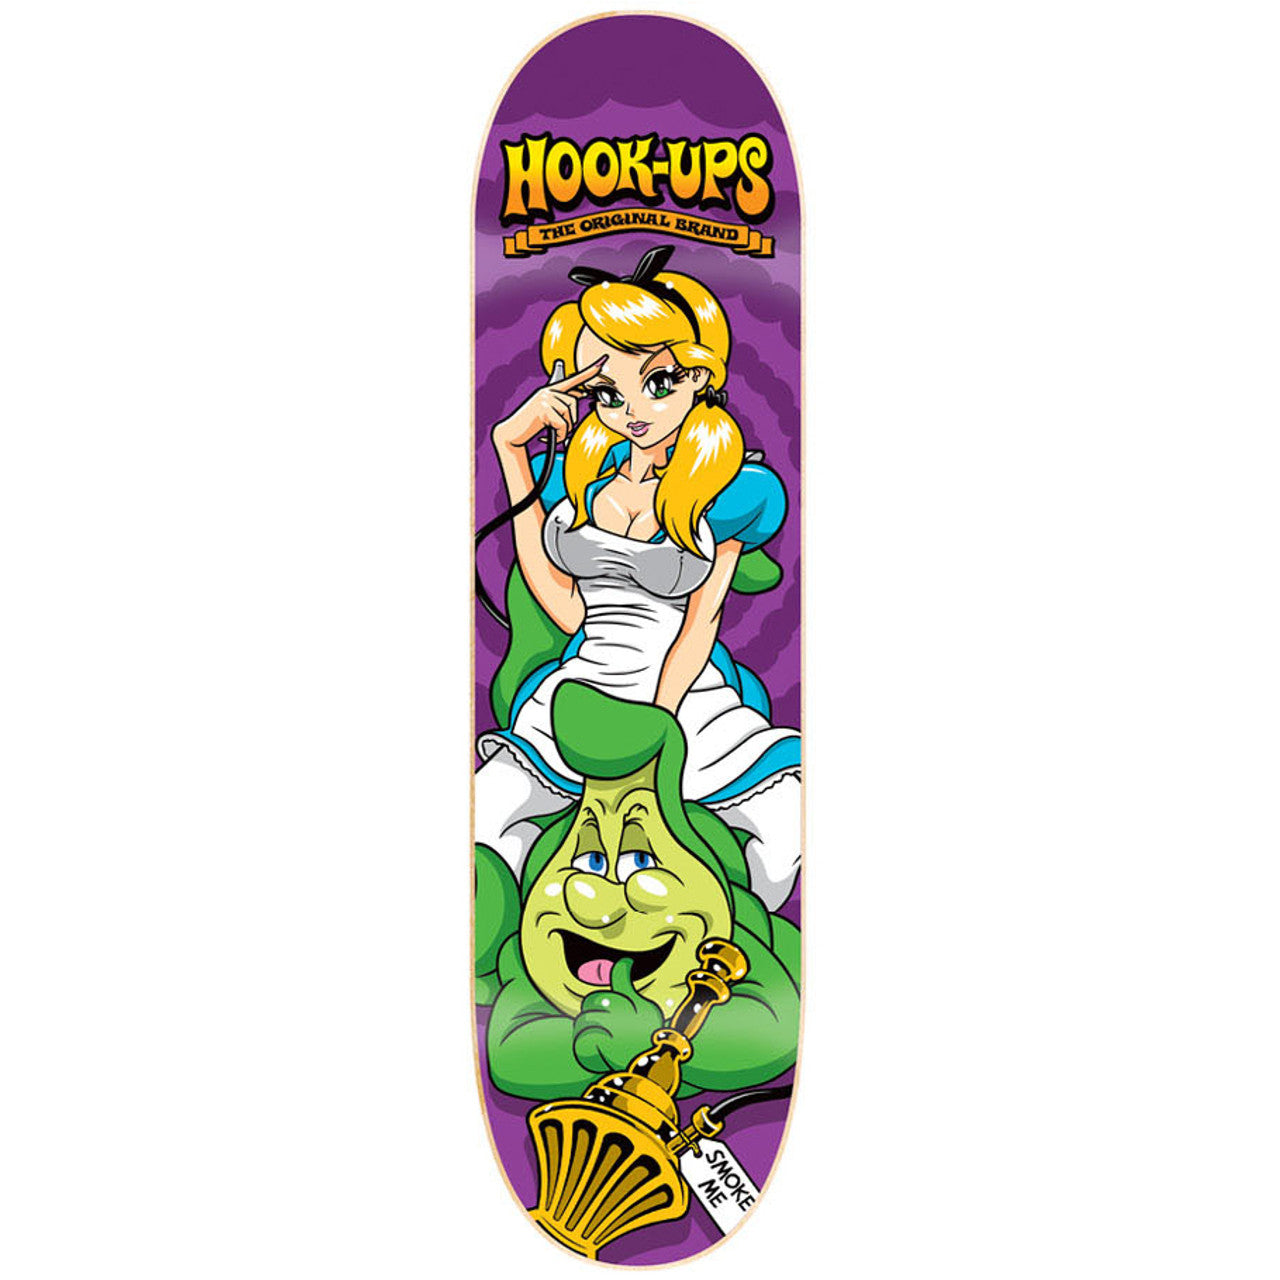 Hook-Ups Alice's Wonderland 2 Skateboard Deck - 8.0